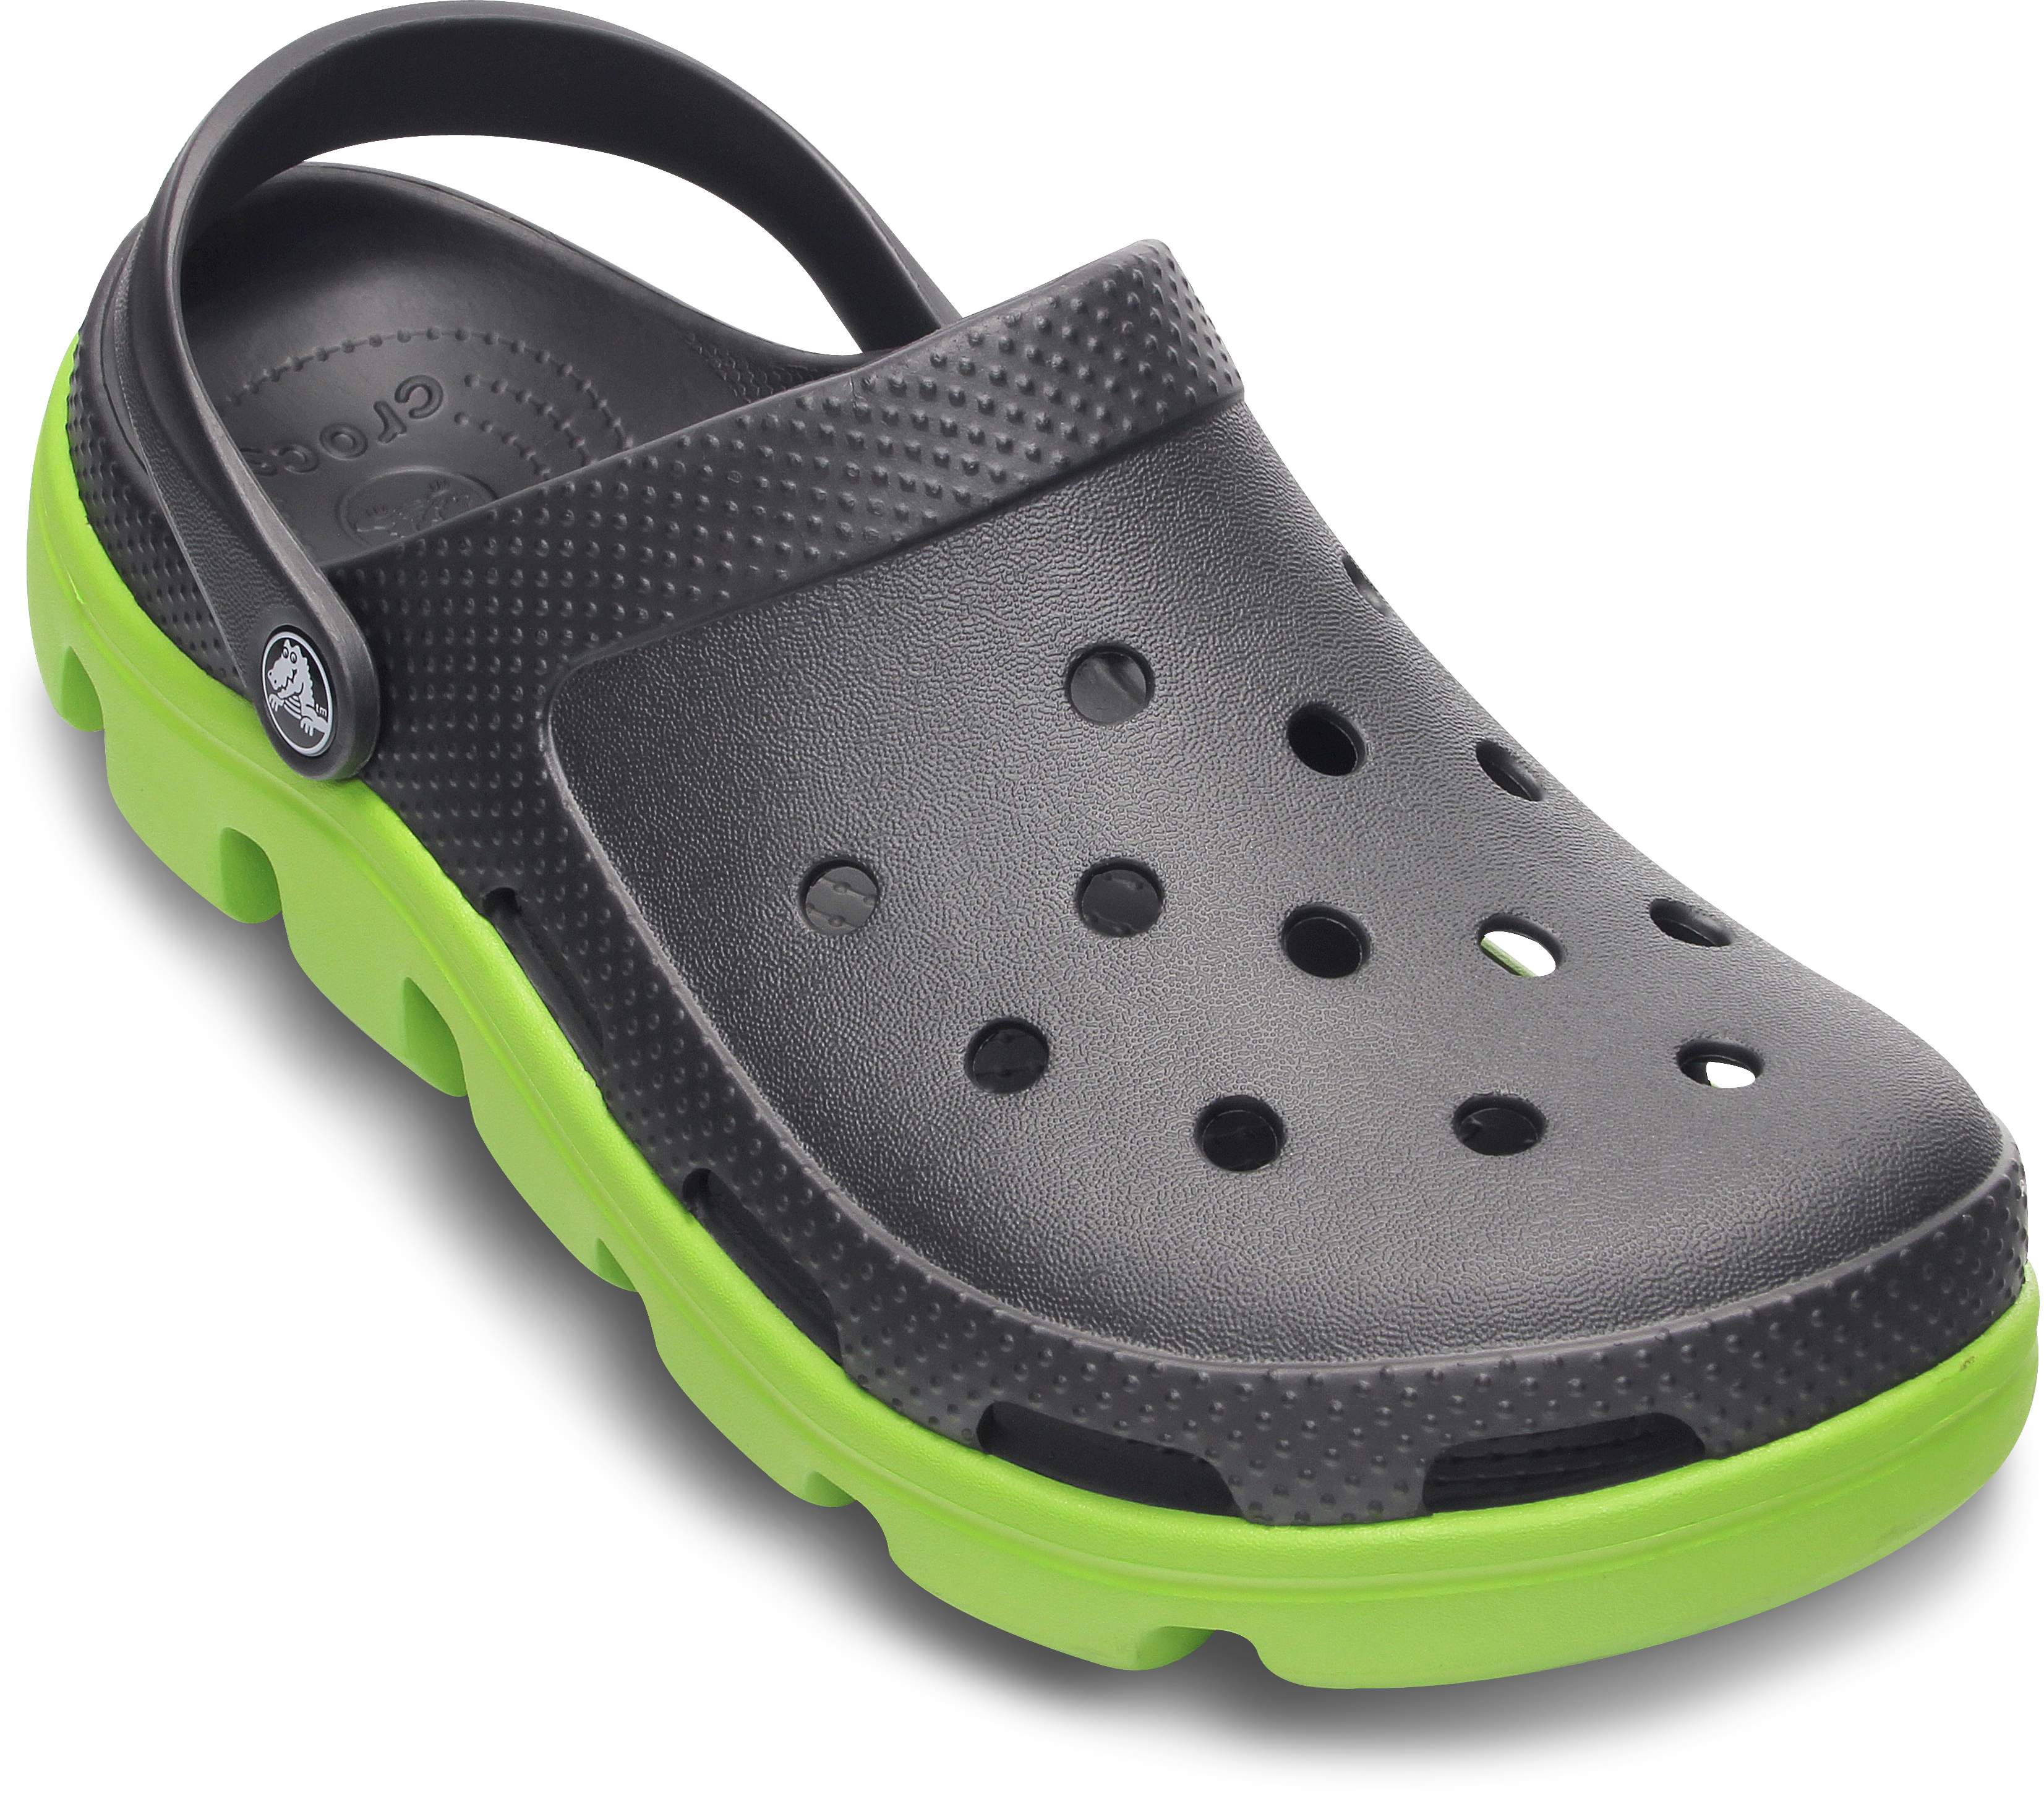 dual crocs comfort clogs